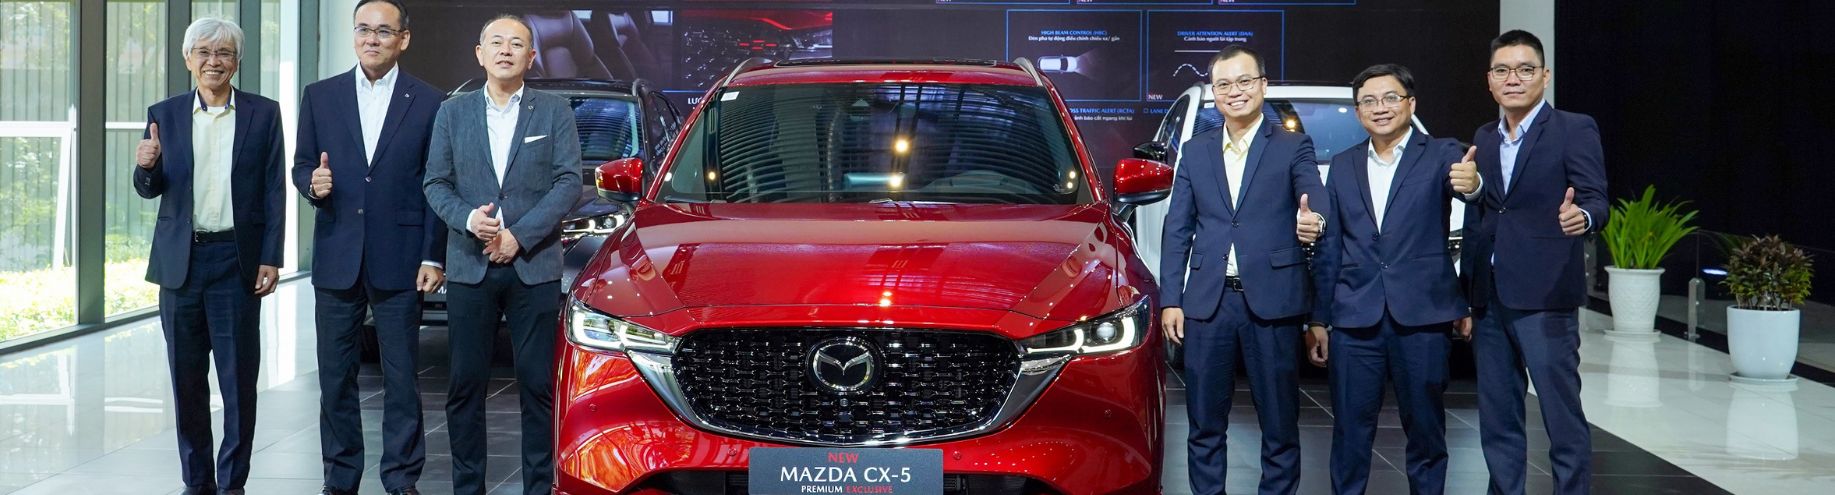 THACO AUTO chính thức giới thiệu mẫu xe New Mazda CX-5 – mẫu SUV với doanh số dẫn đầu phân khúc C-SUV tại Việt Nam